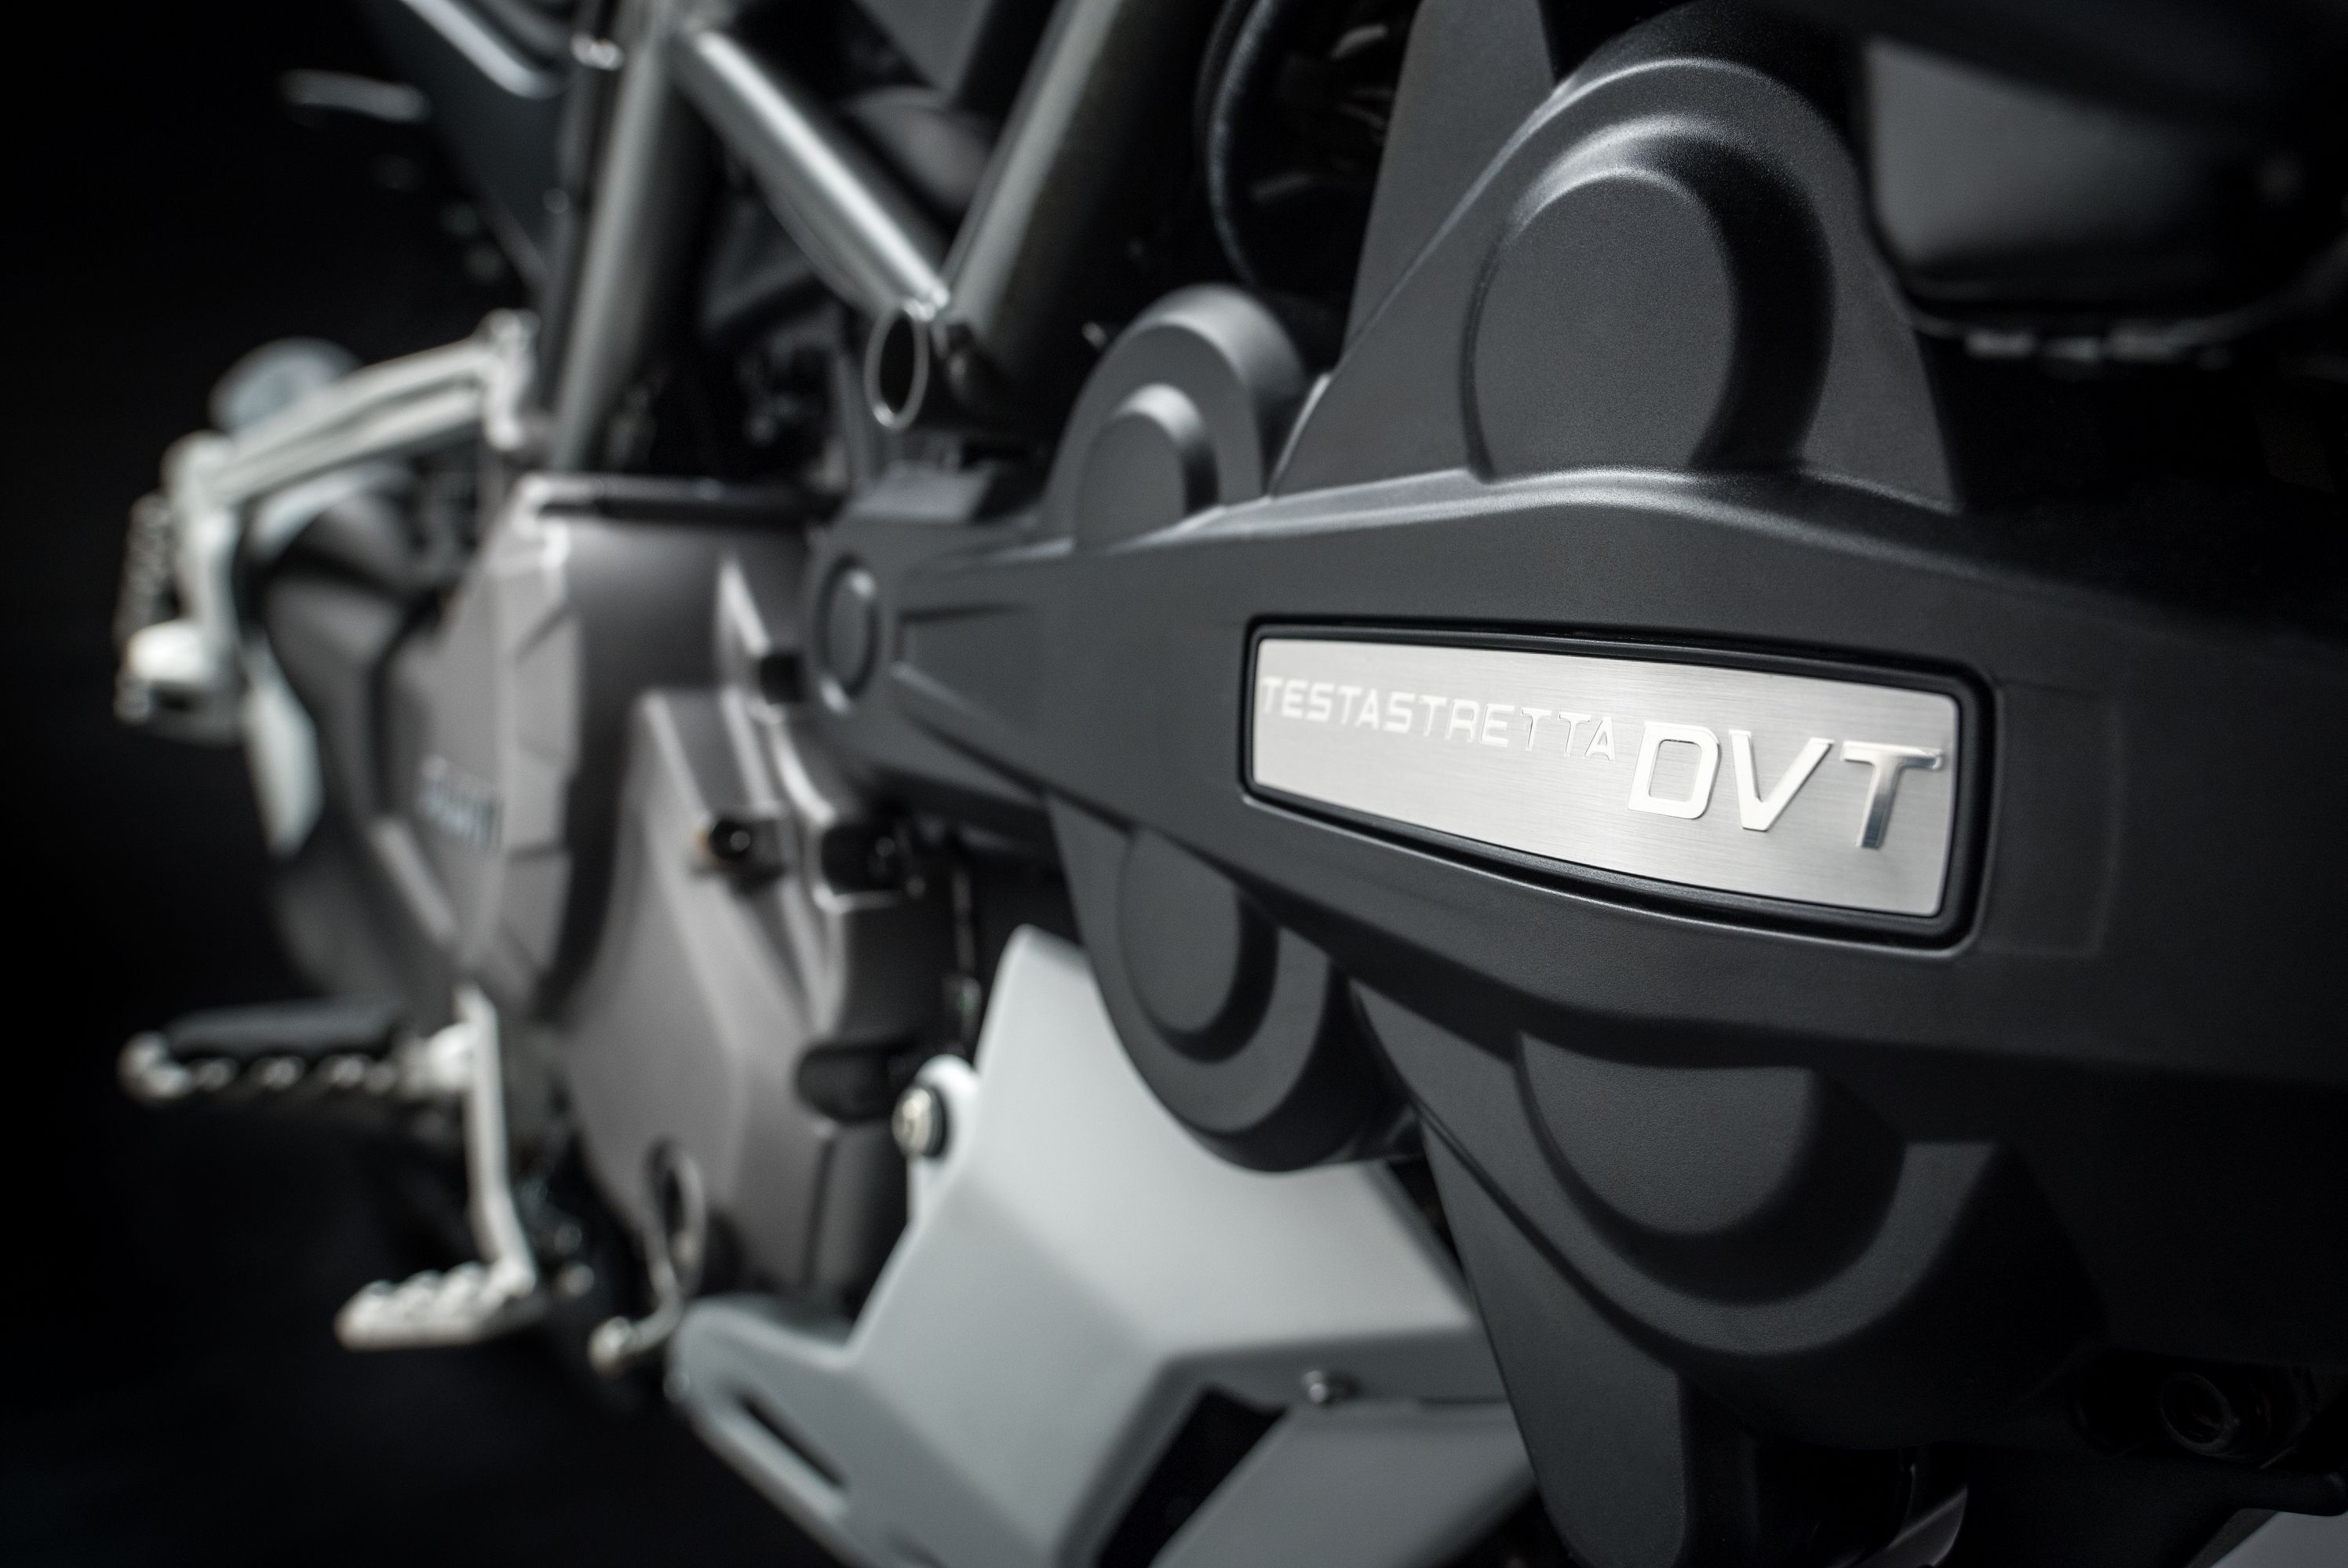 2018 - 2019 Ducati Multistrada 1260 S / S D|air